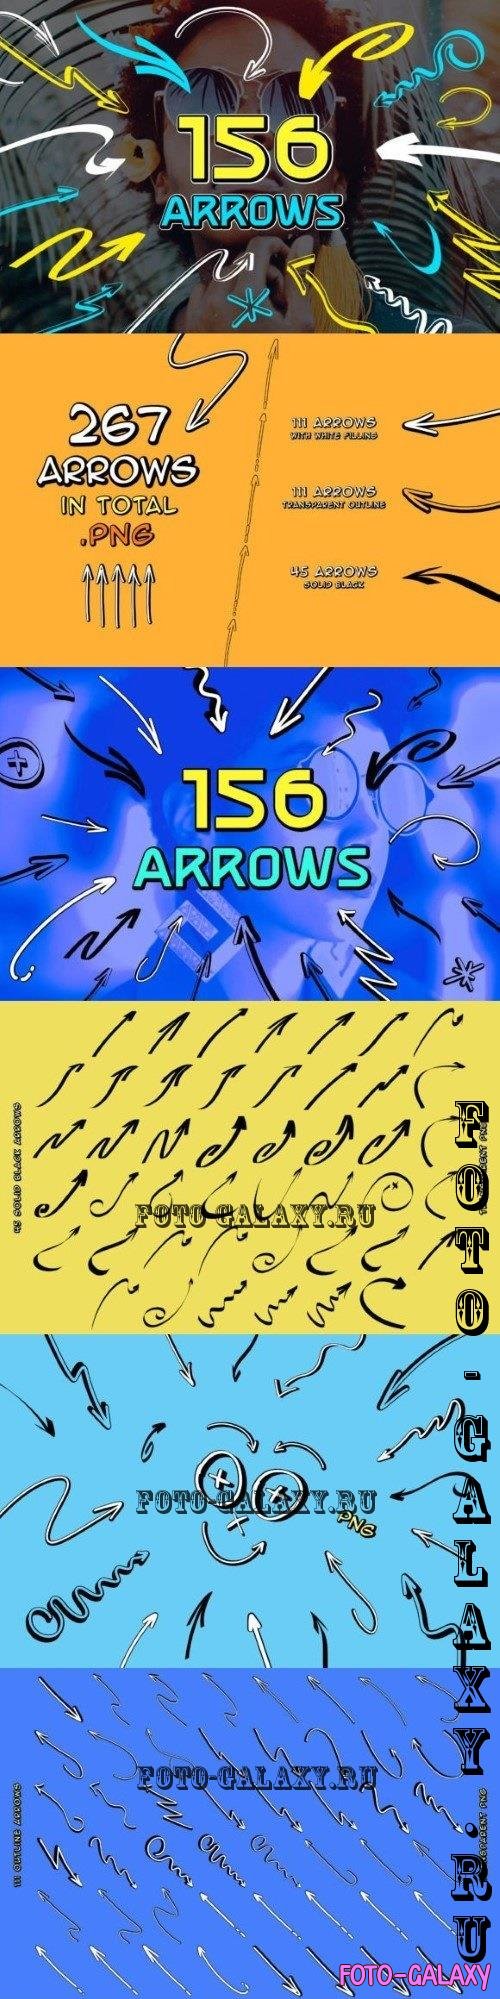 Hand drawn arrows - 31386957